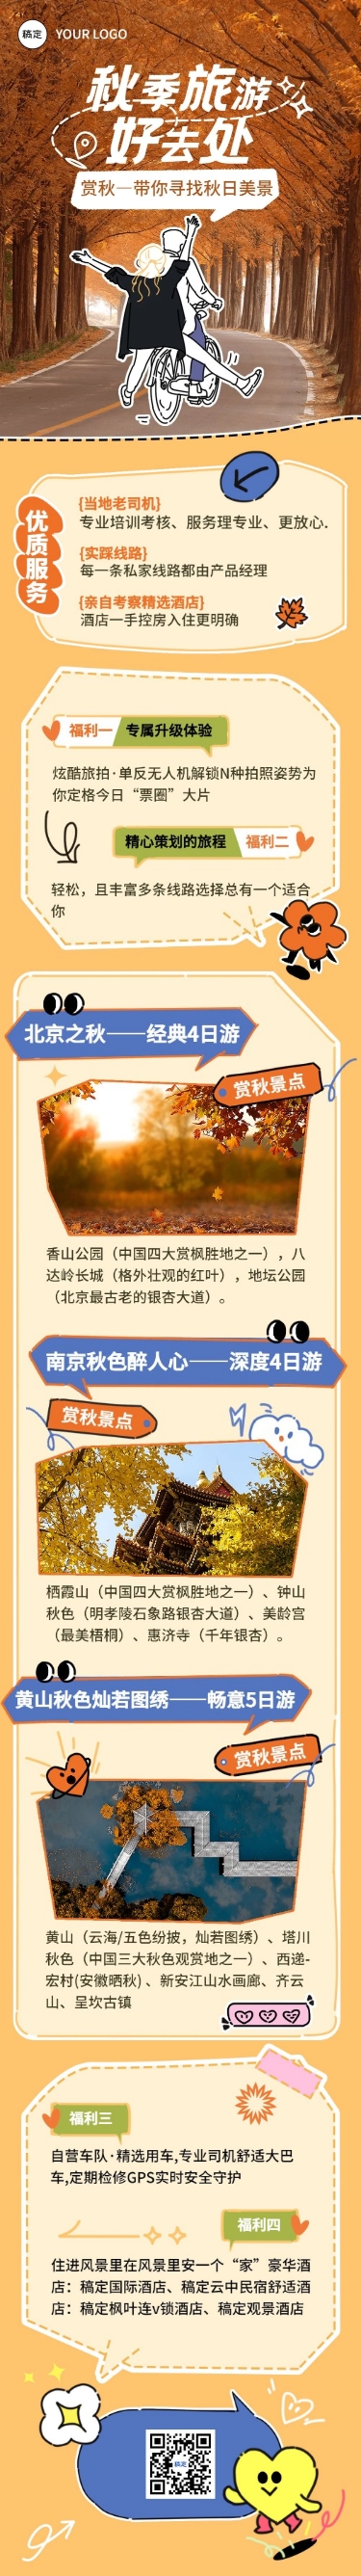 秋季旅游营销文章长图